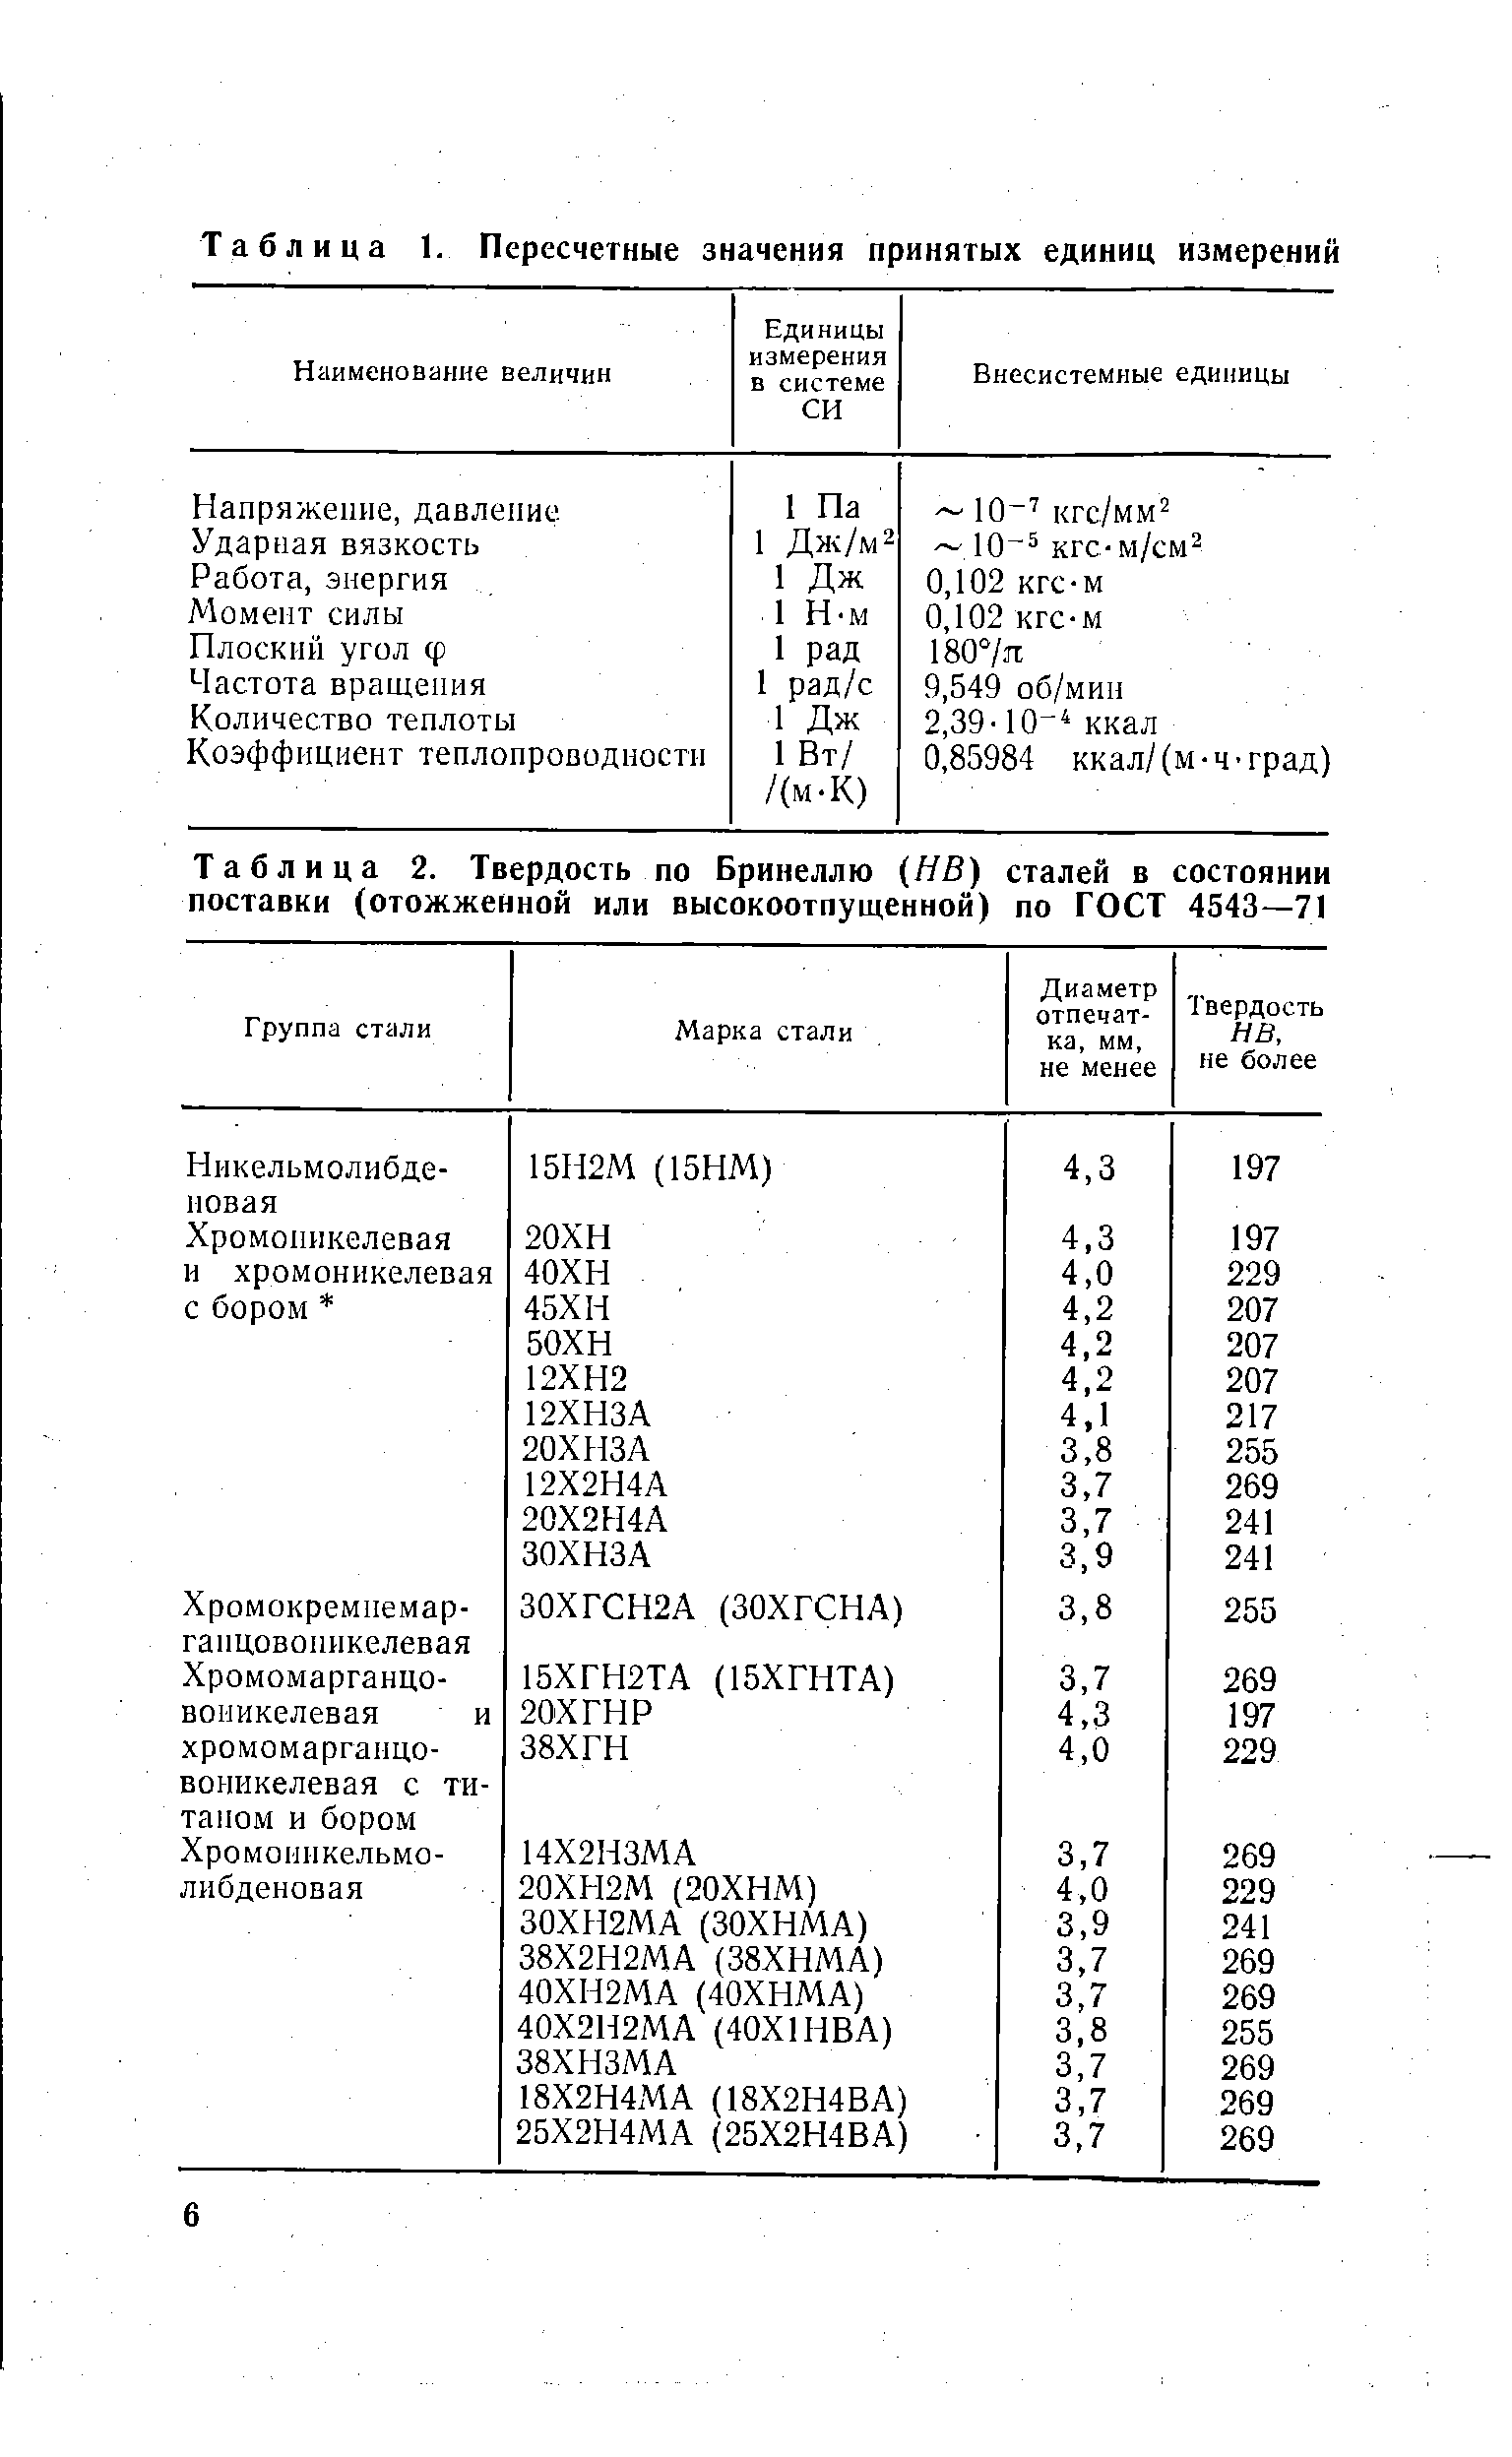 Таблица 2. Твердость по Бринеллю (НВ) сталей в поставки (отожженной или высокоотпущенной) по ГОСТ состоянии 4543-71
